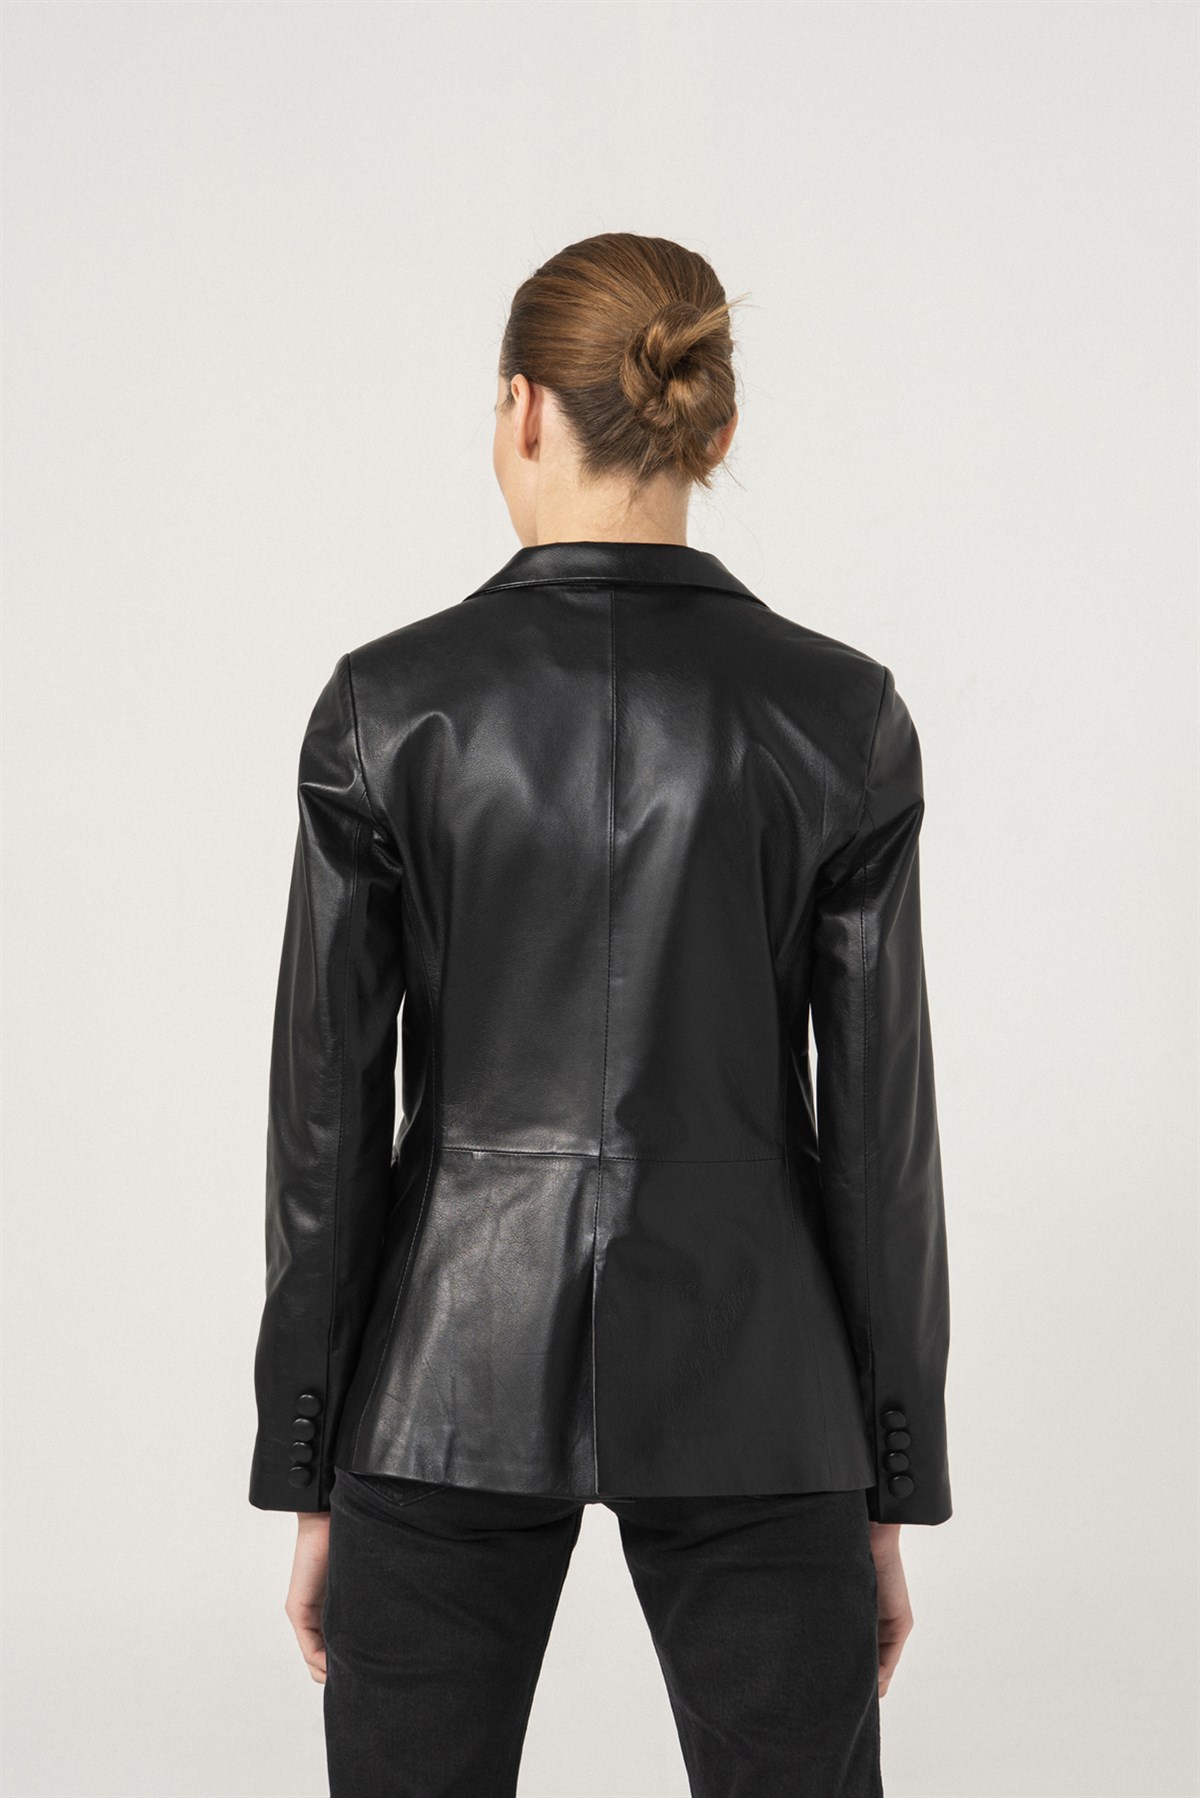 OLIVIA Tek Düğmeli Siyah Deri Blazer Ceket Kadın Deri Ceket Modelleri